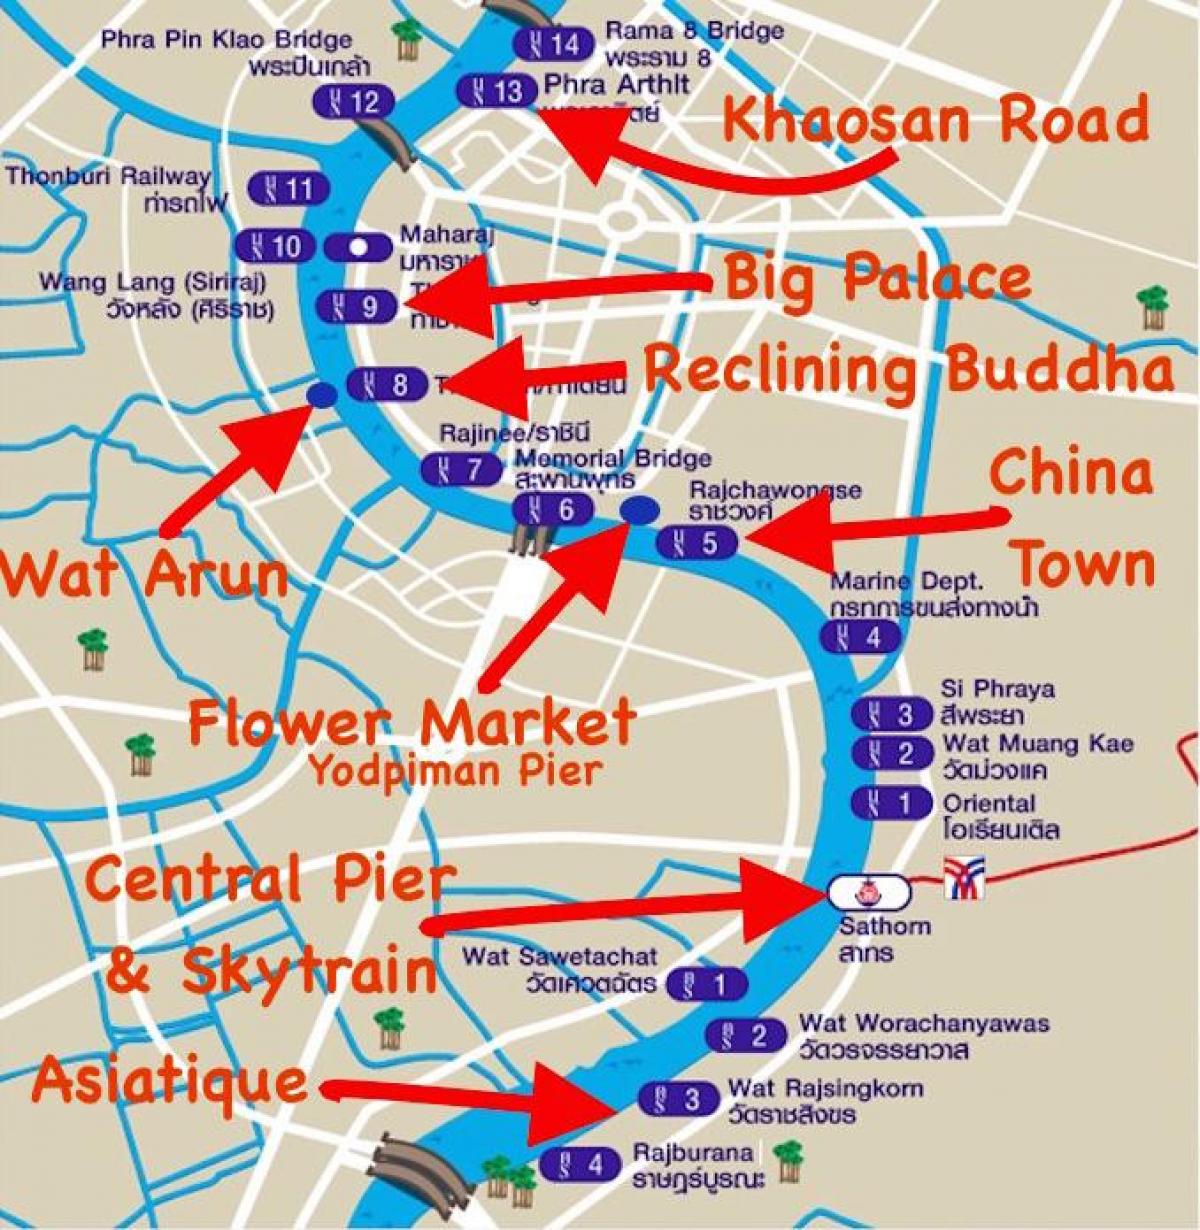 नक्शा बैंकॉक के घाट